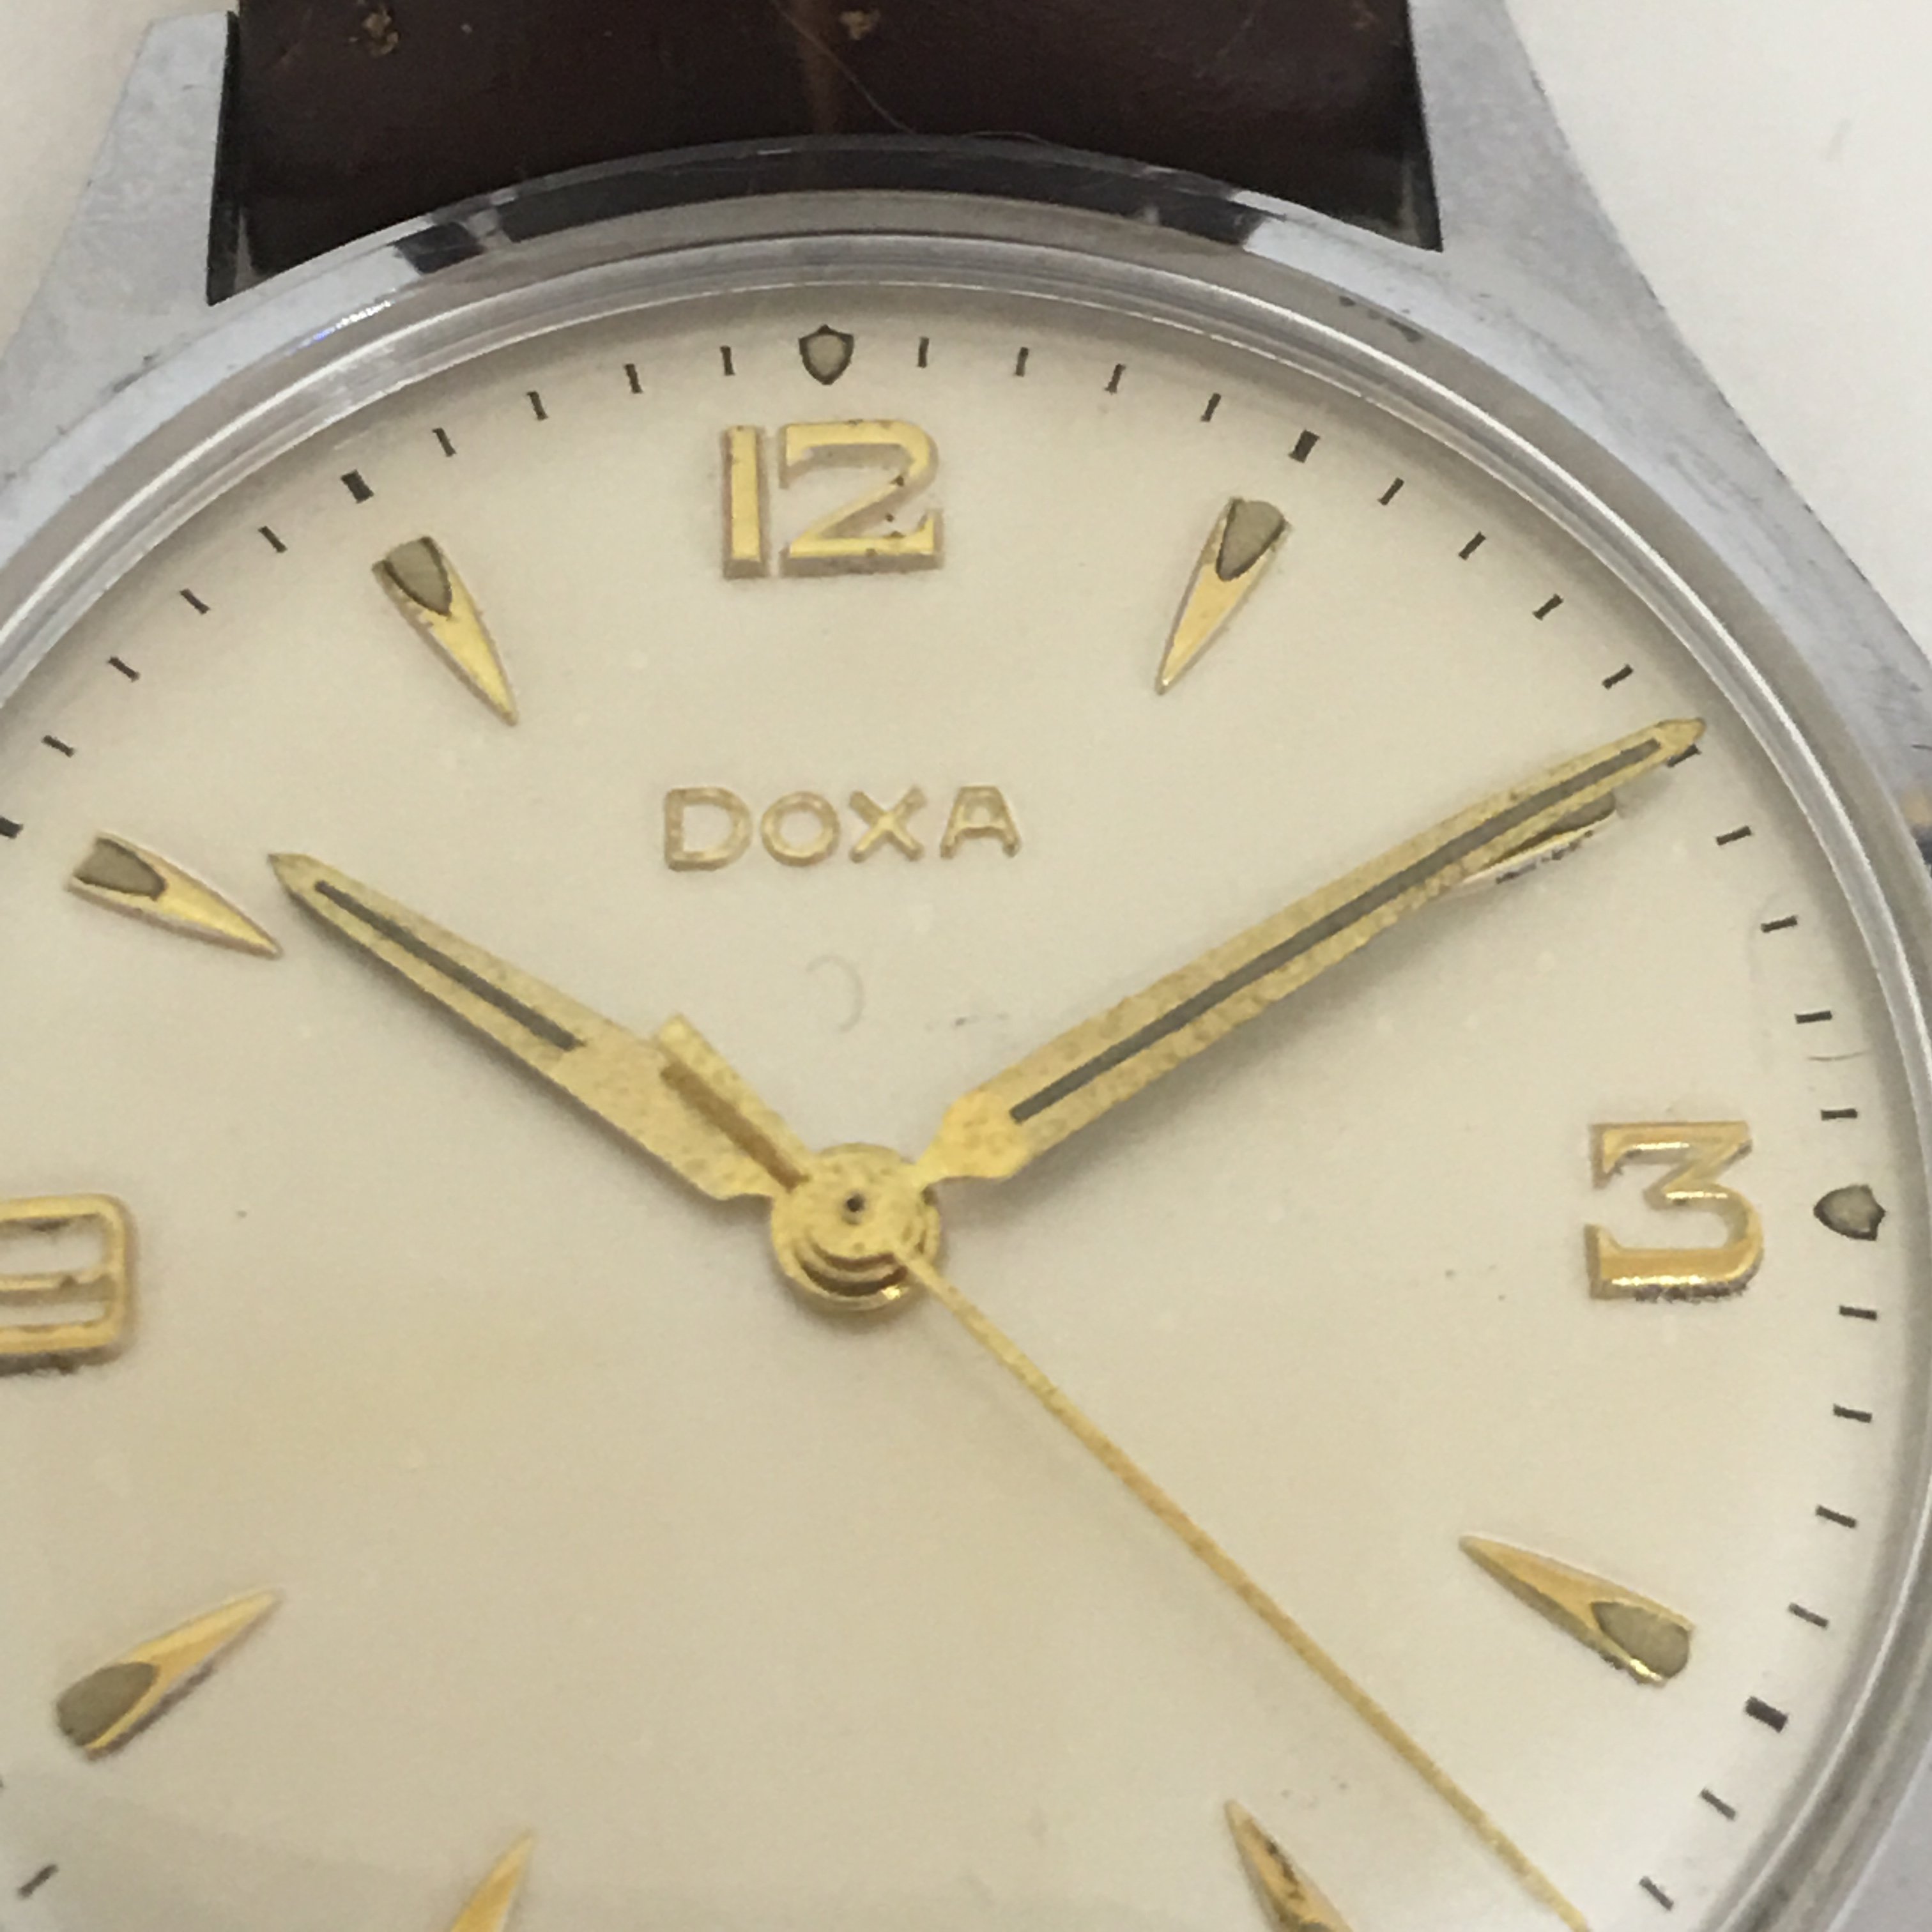 Doxa Pocket Watch Serial Numbers